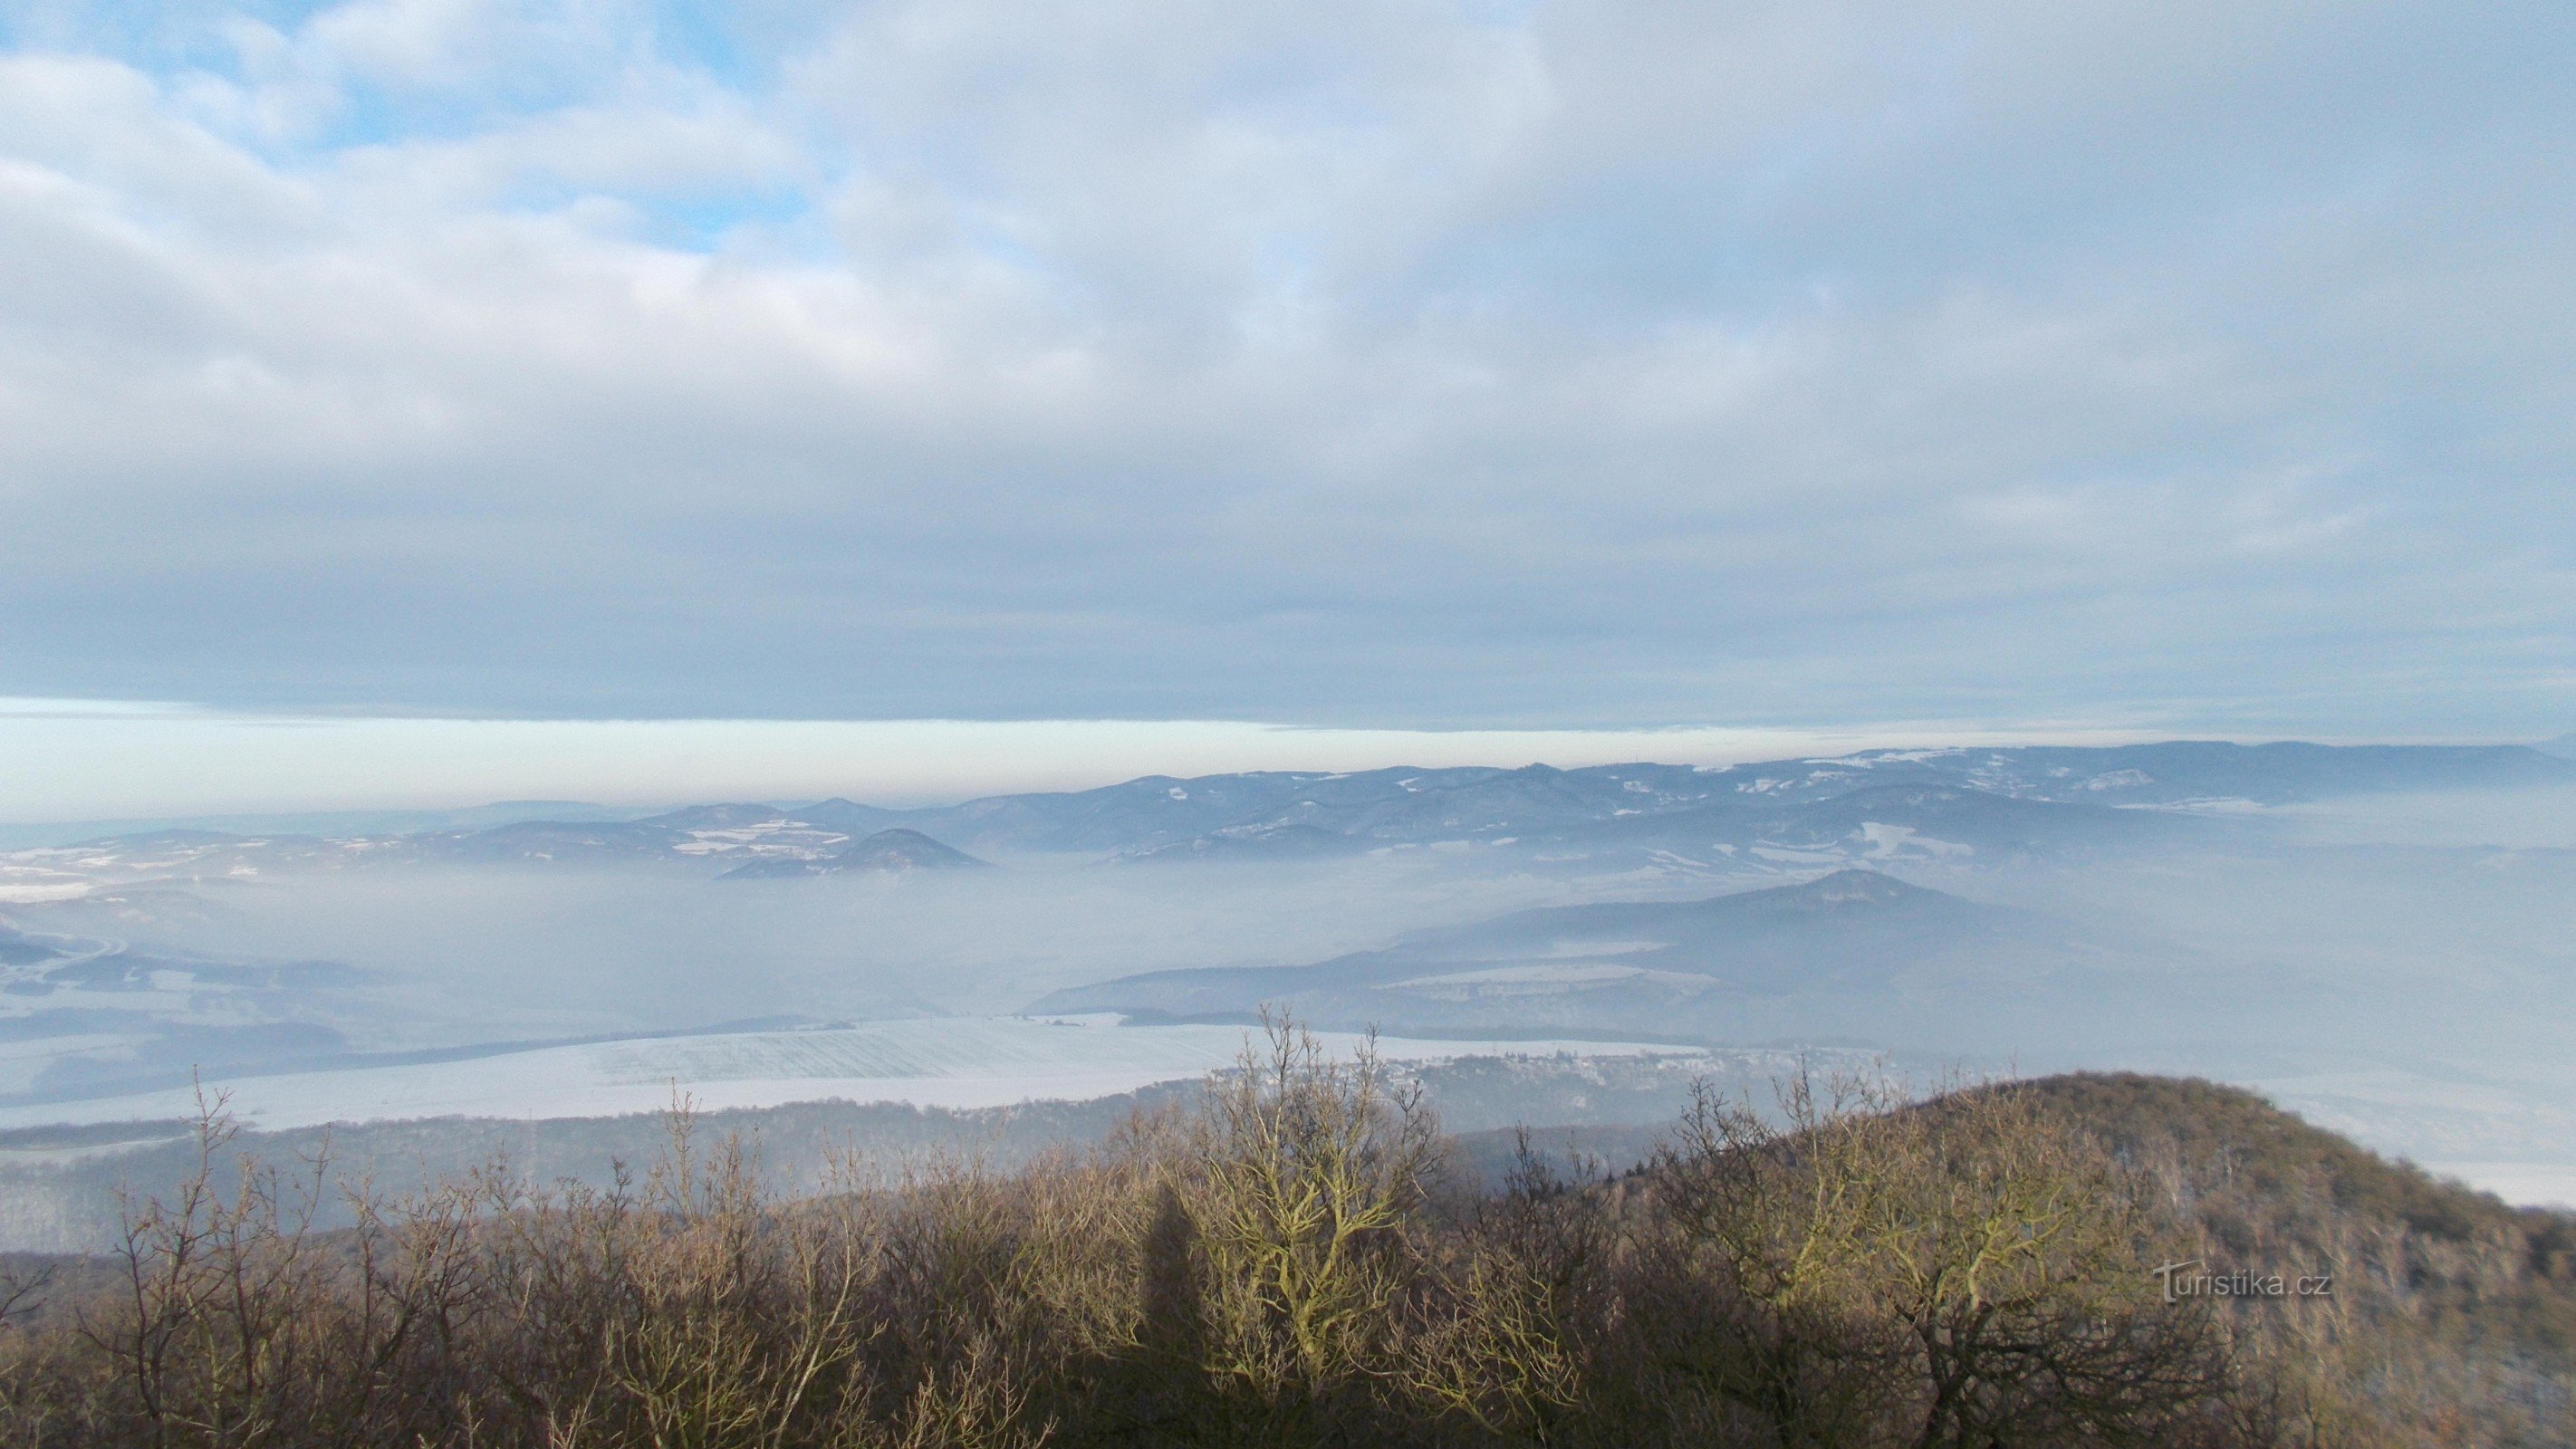 Vista del Labské údolí desde la cima de Lovoš.